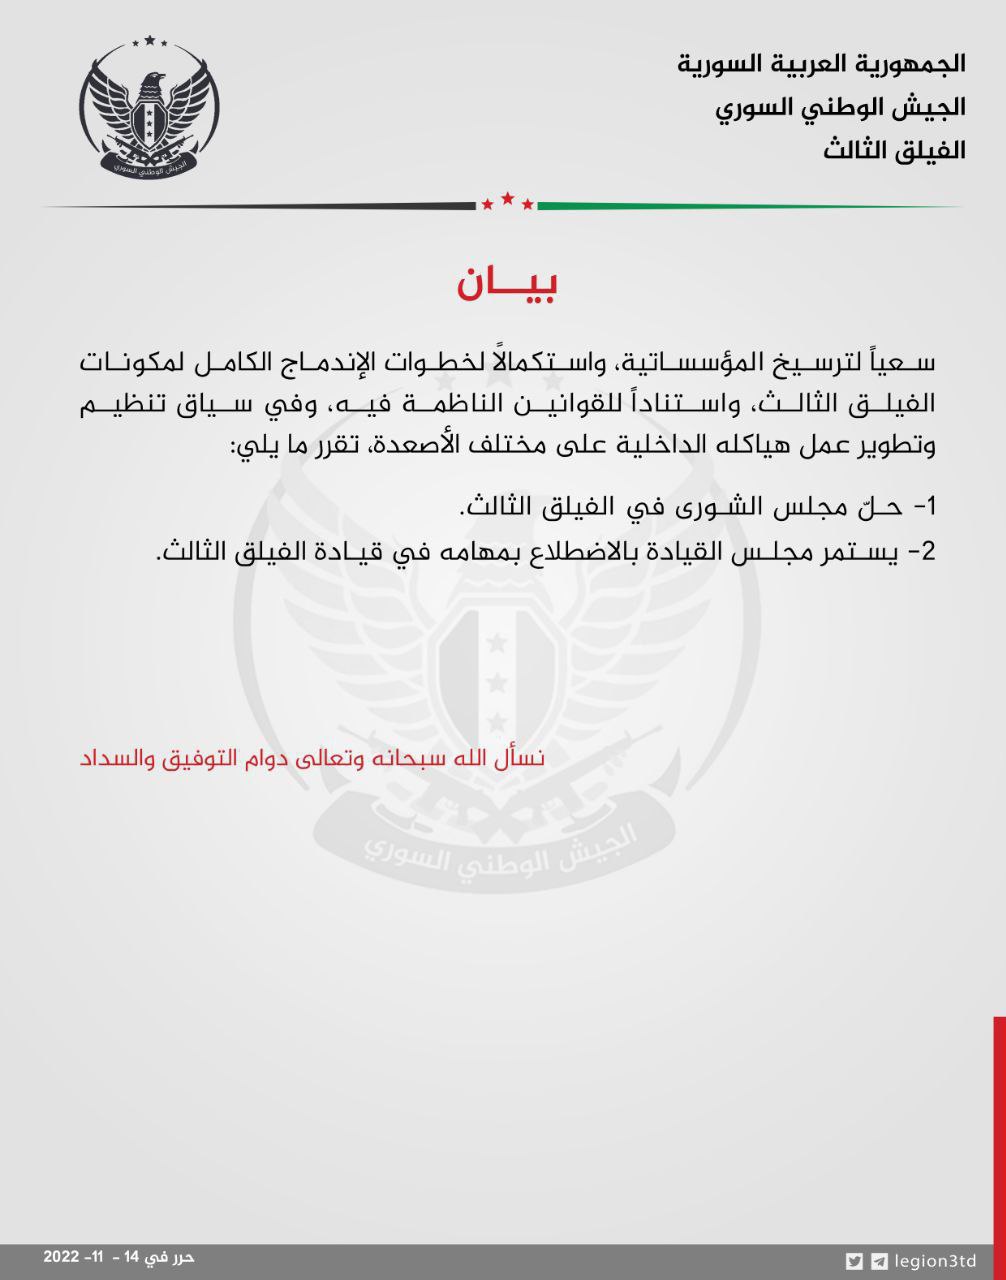 بيان "الفيلق الثالث" التابع لـ"الجيش الوطني السوري" المدعوم من تركيا، بخصوص حل "مجلس الشورى" في الفصيل